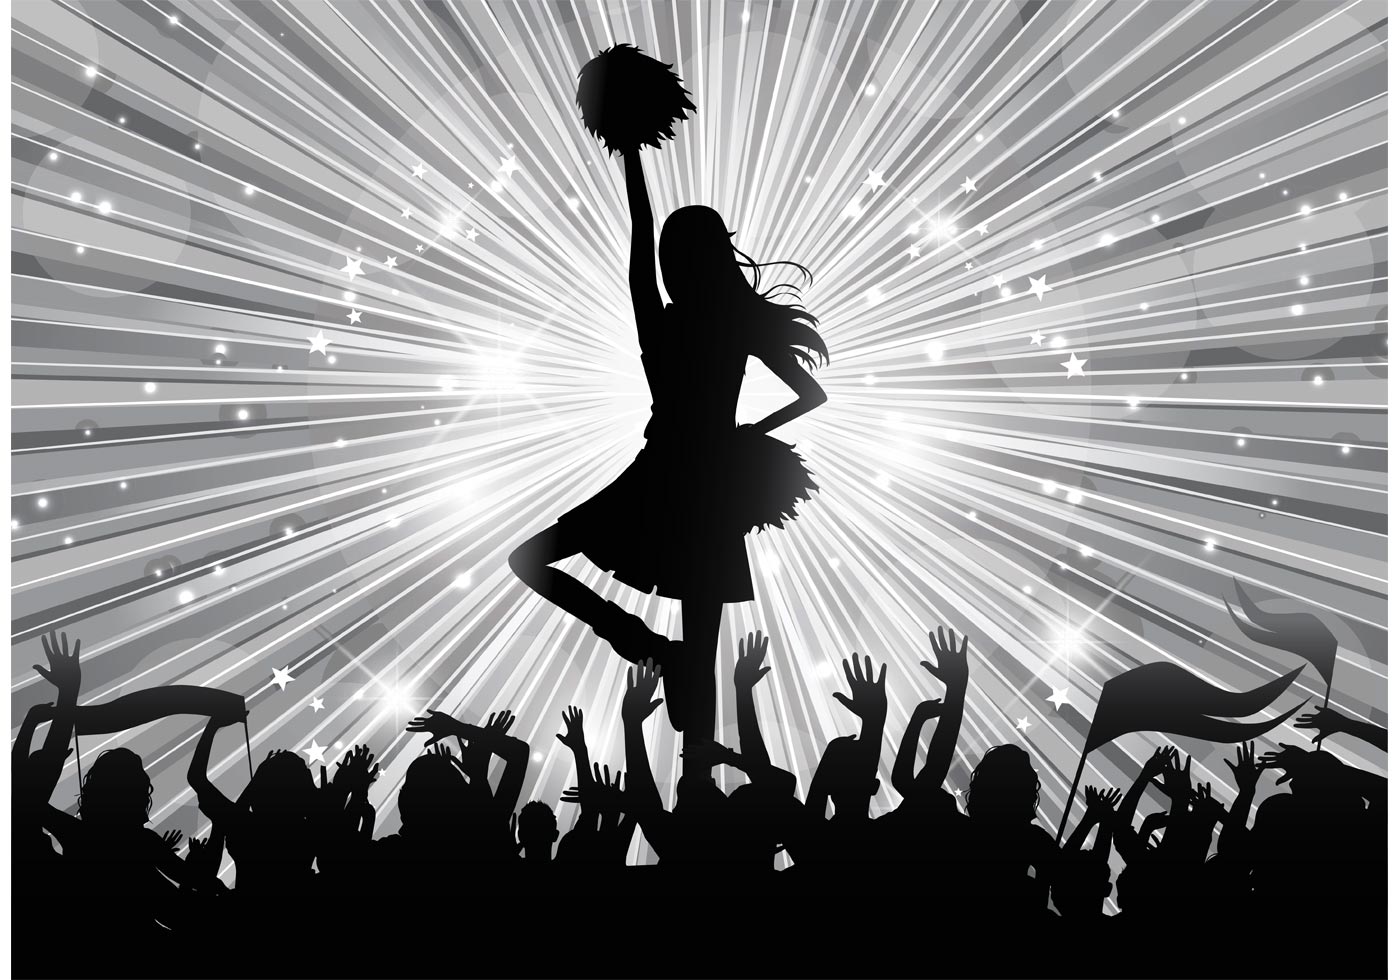 응원 벽지,검정색과 흰색,실루엣,춤추는 사람,공연,단색화